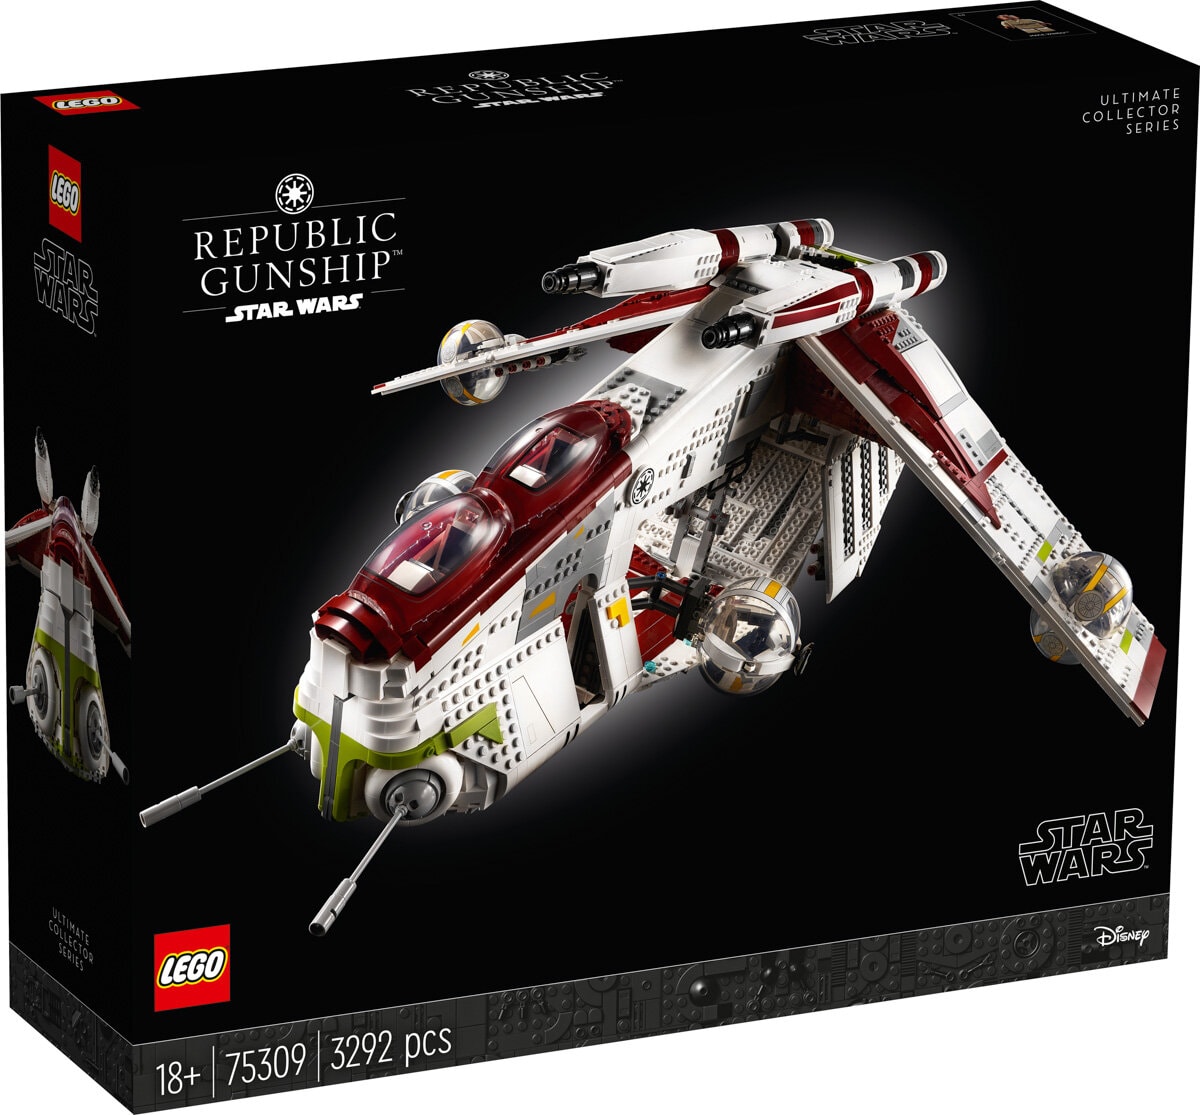 Nouveauté LEGO Star Wars 75309 Republic Gunship UCS l’annonce